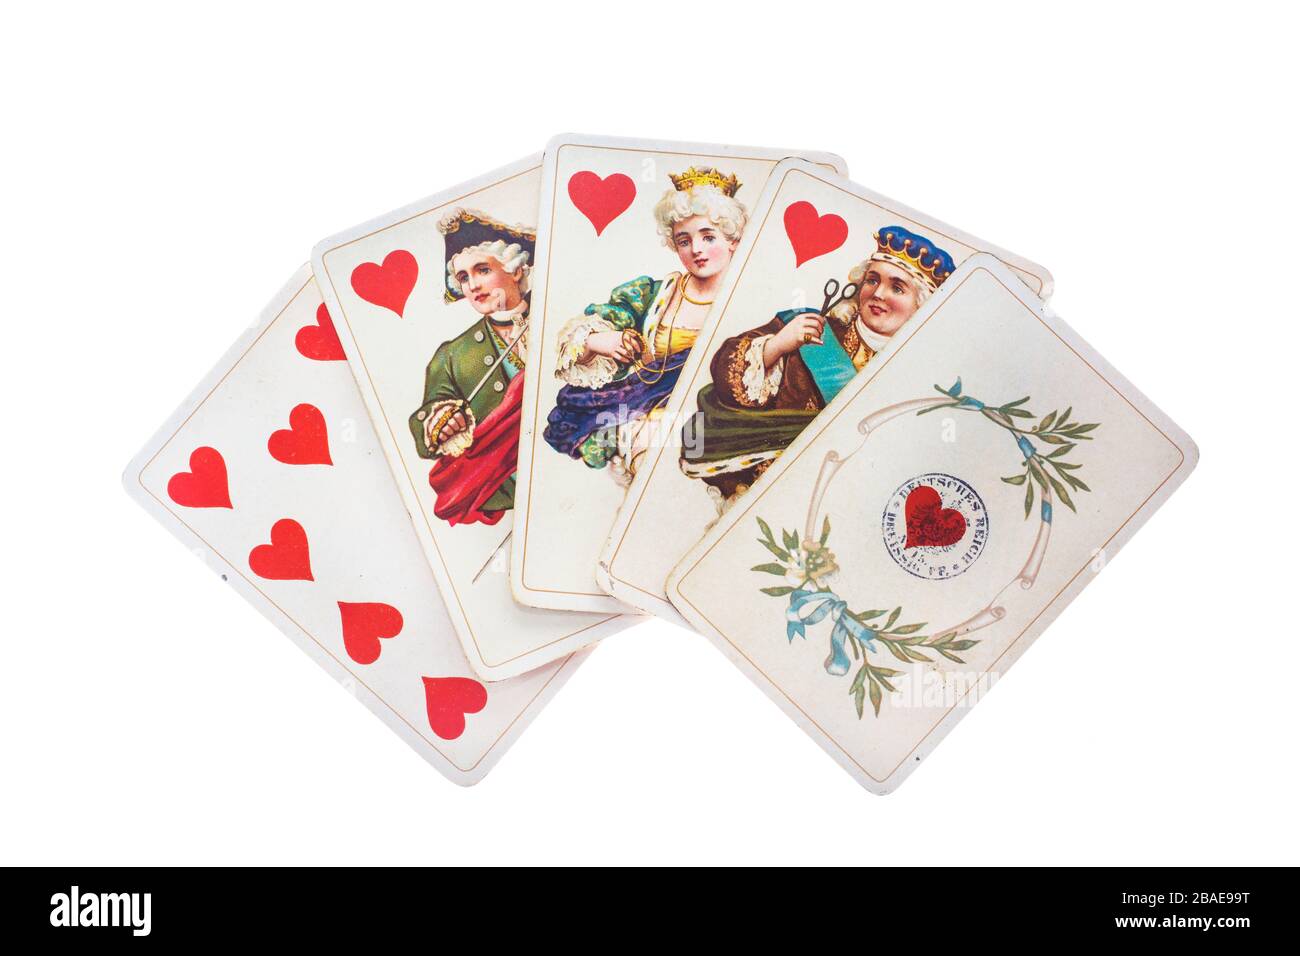 Antike Spielkarten Hintergrund Stockfotografie - Alamy